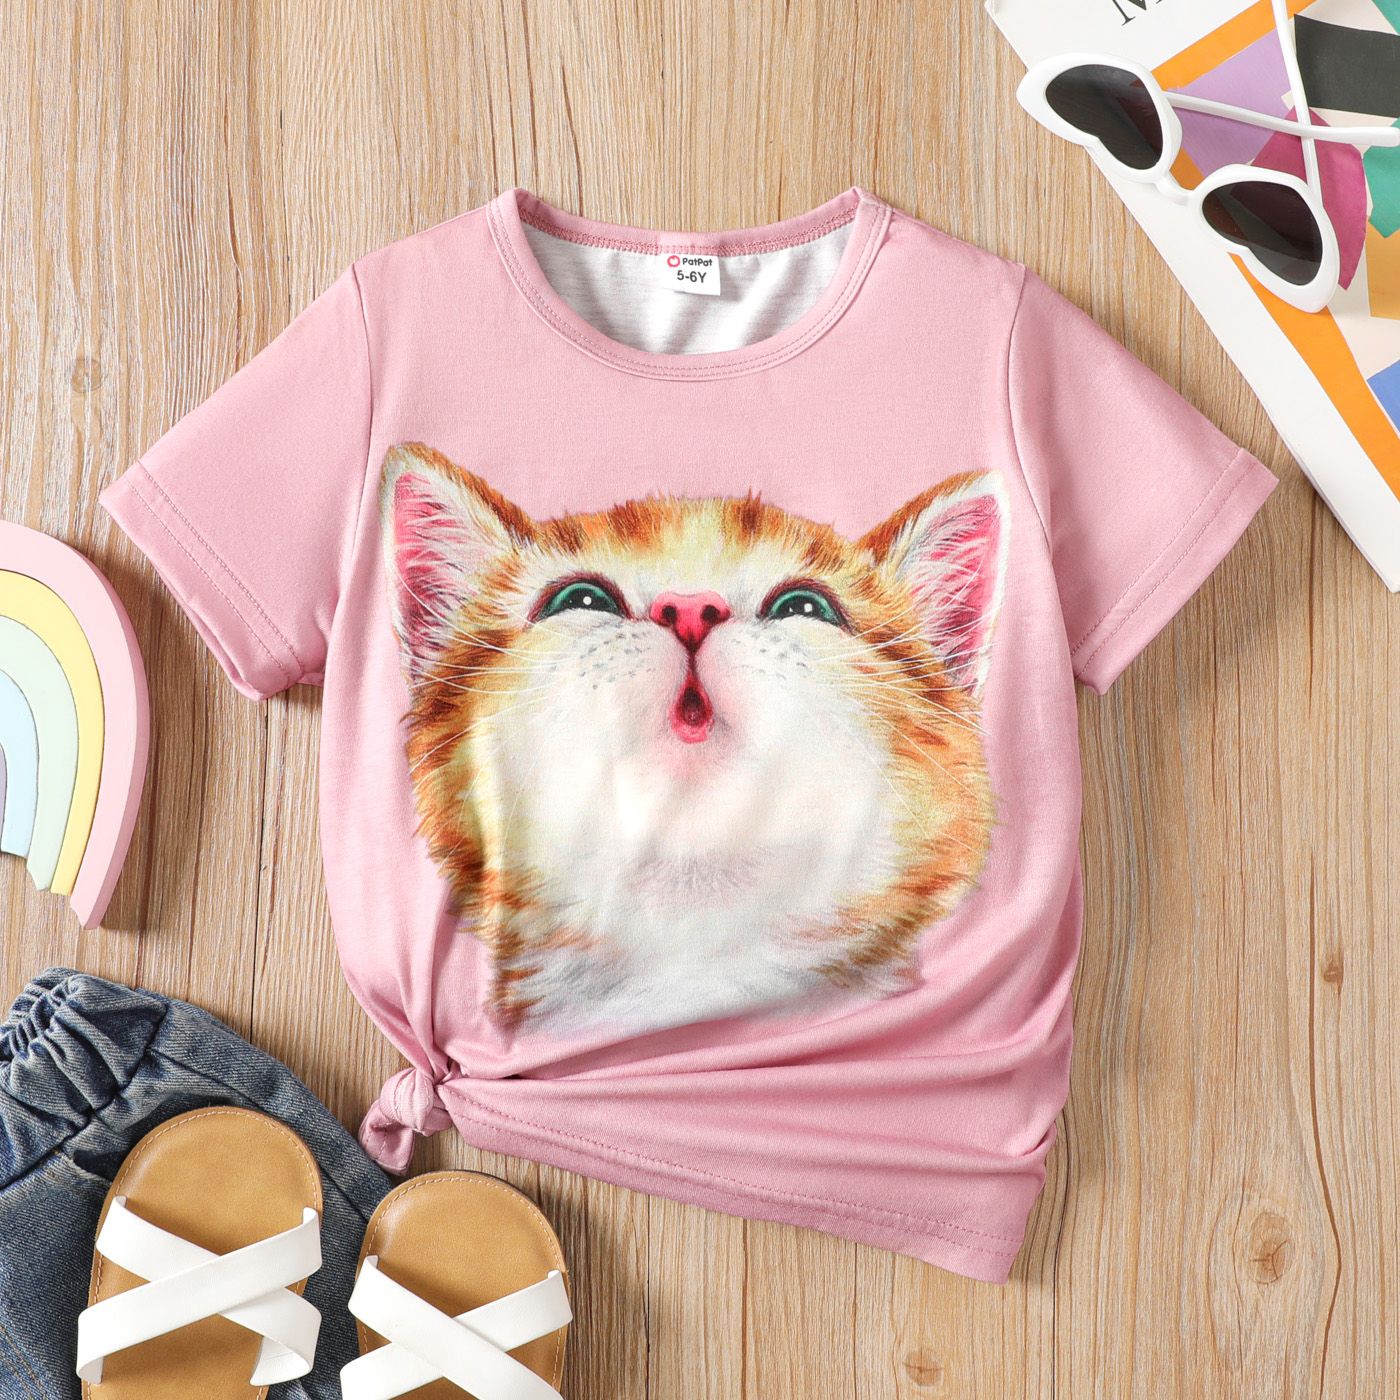 Kid Girl Cute Cat Print Short-sleeve Top